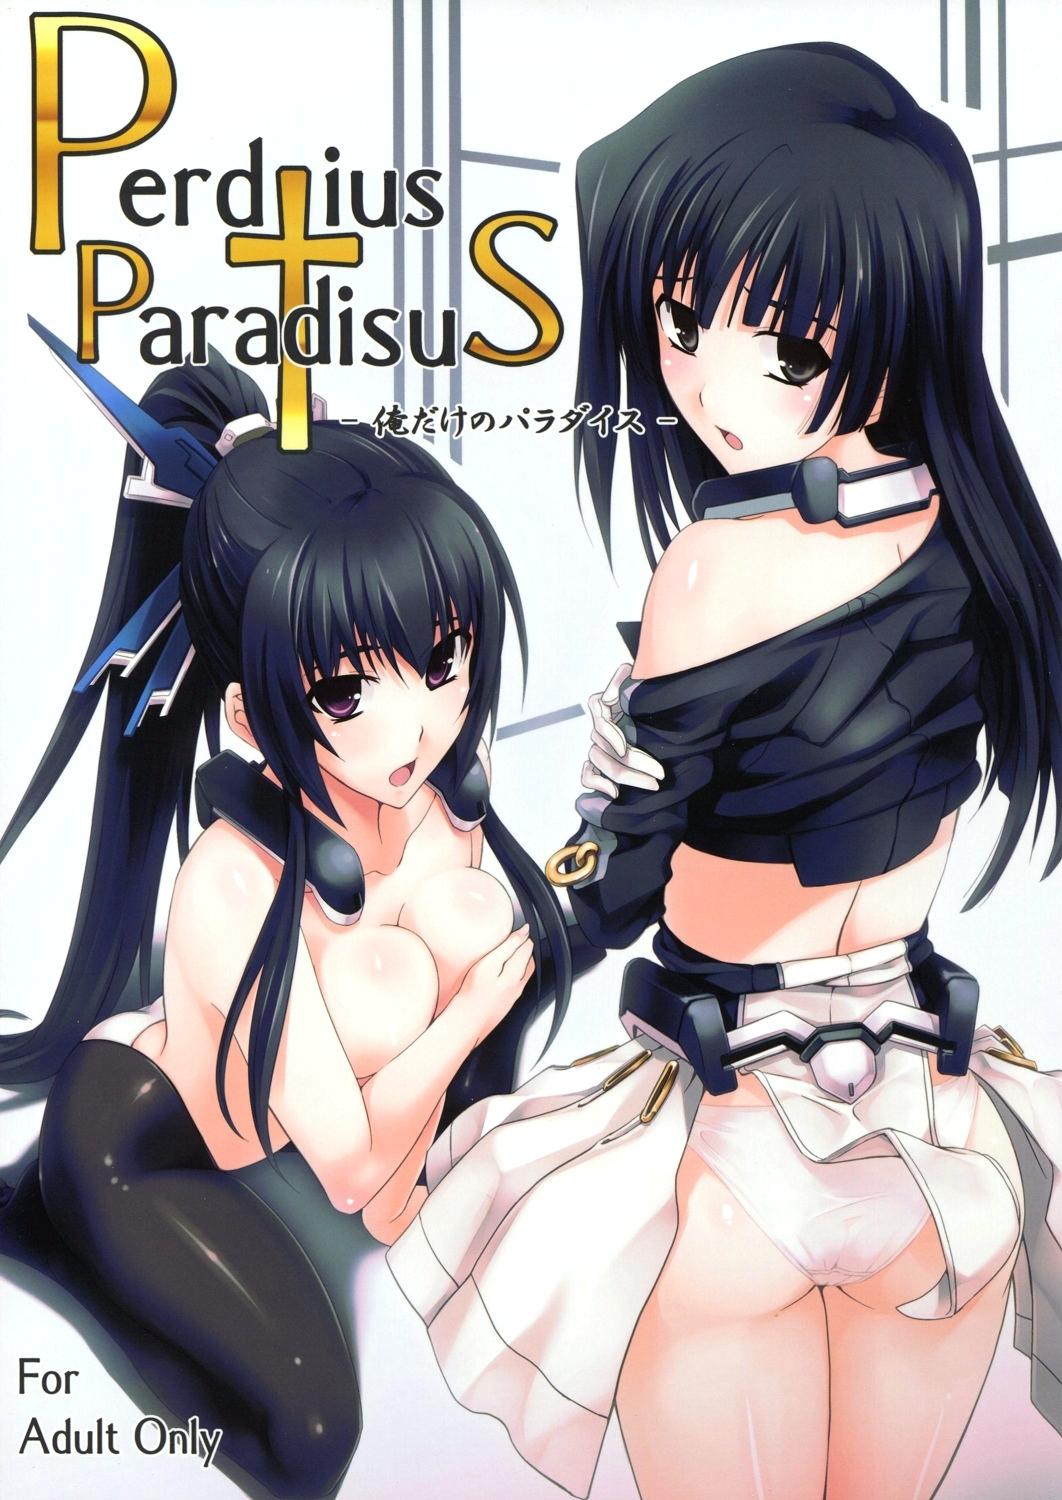 Peludo Perditus ParadisuS - Kyoukai senjou no horizon Gay 3some - Picture 1